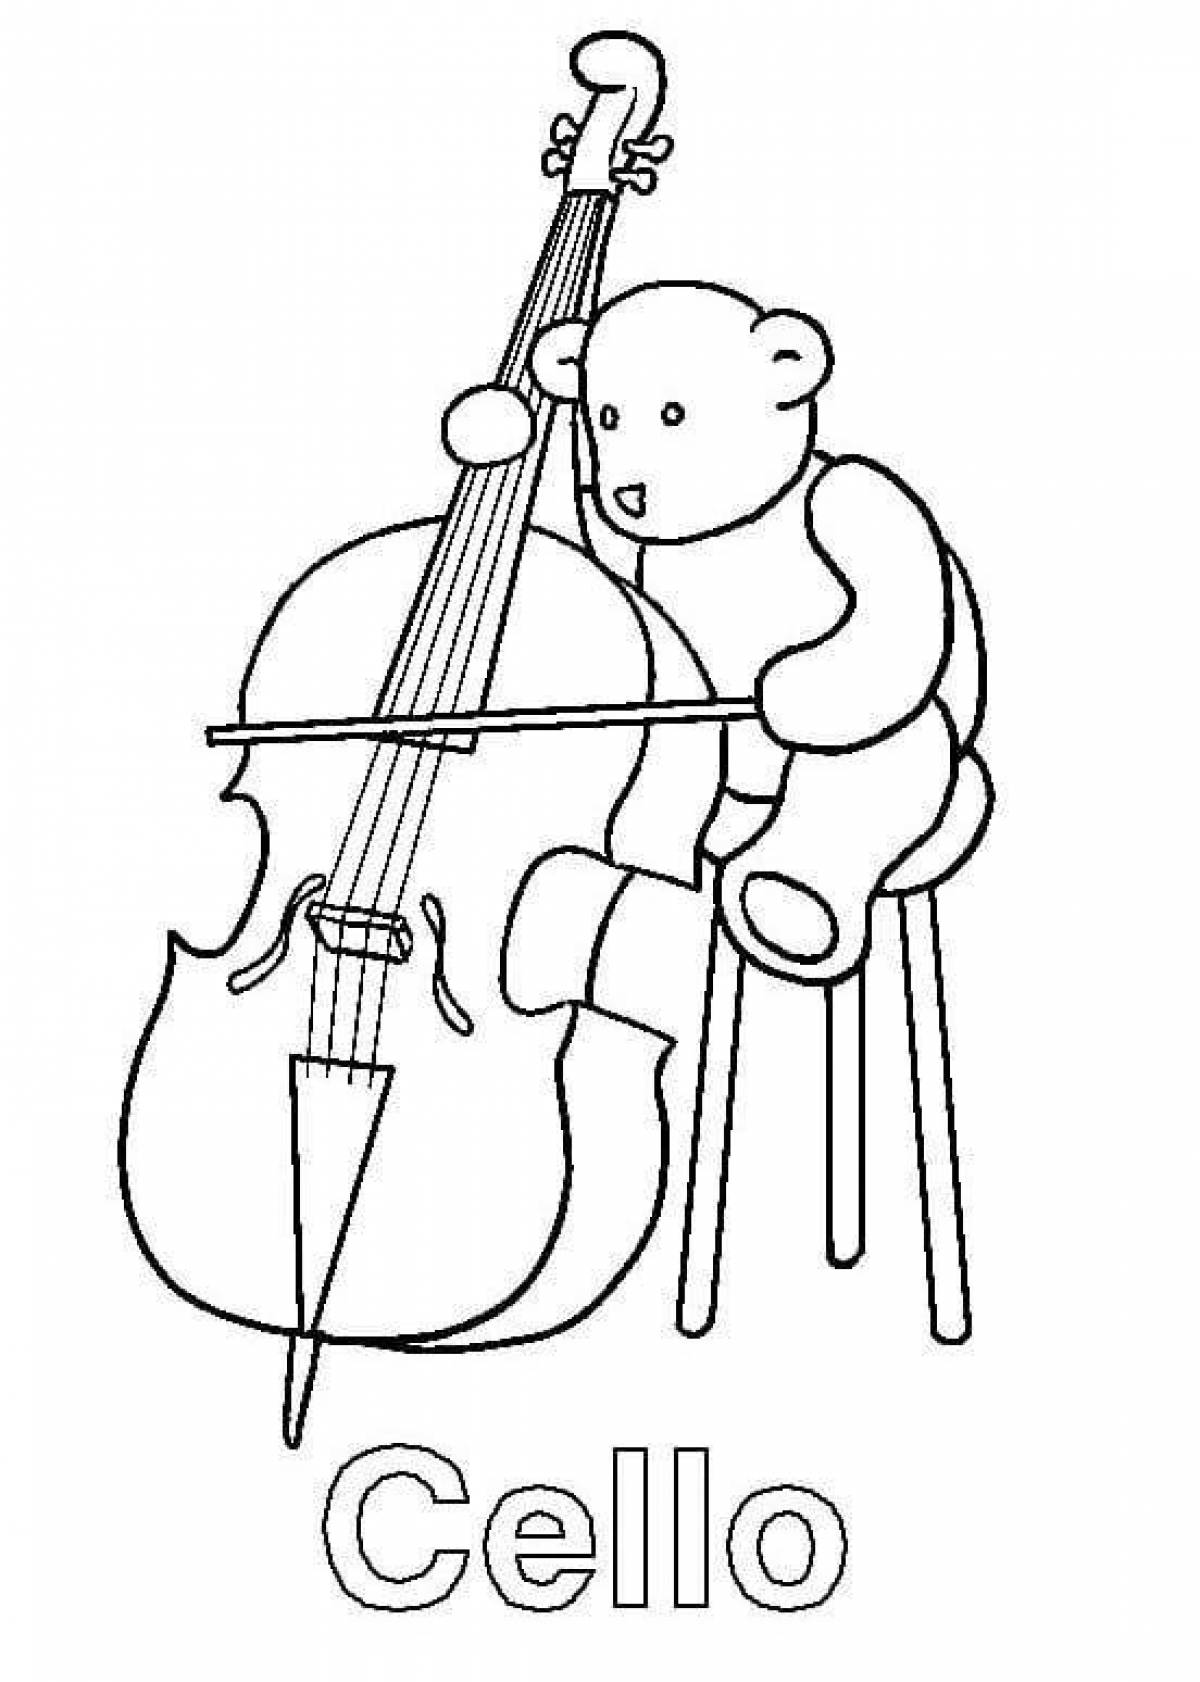 Shiny cello coloring